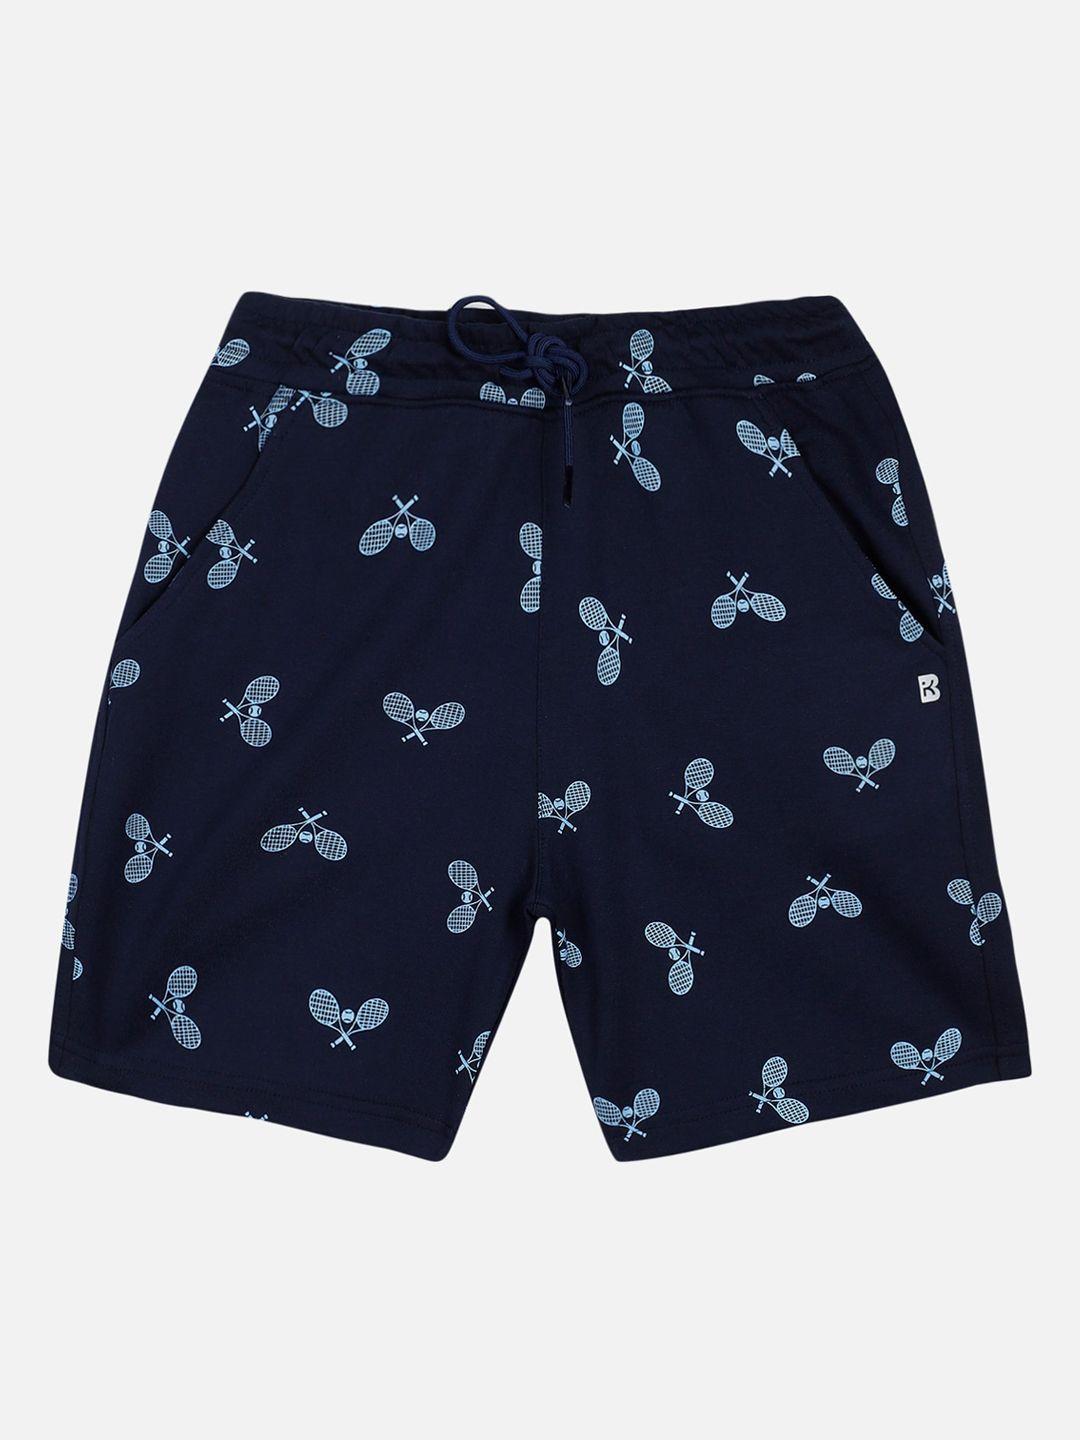 proteens boys navy blue printed antiviral & antibacterial protection regular shorts